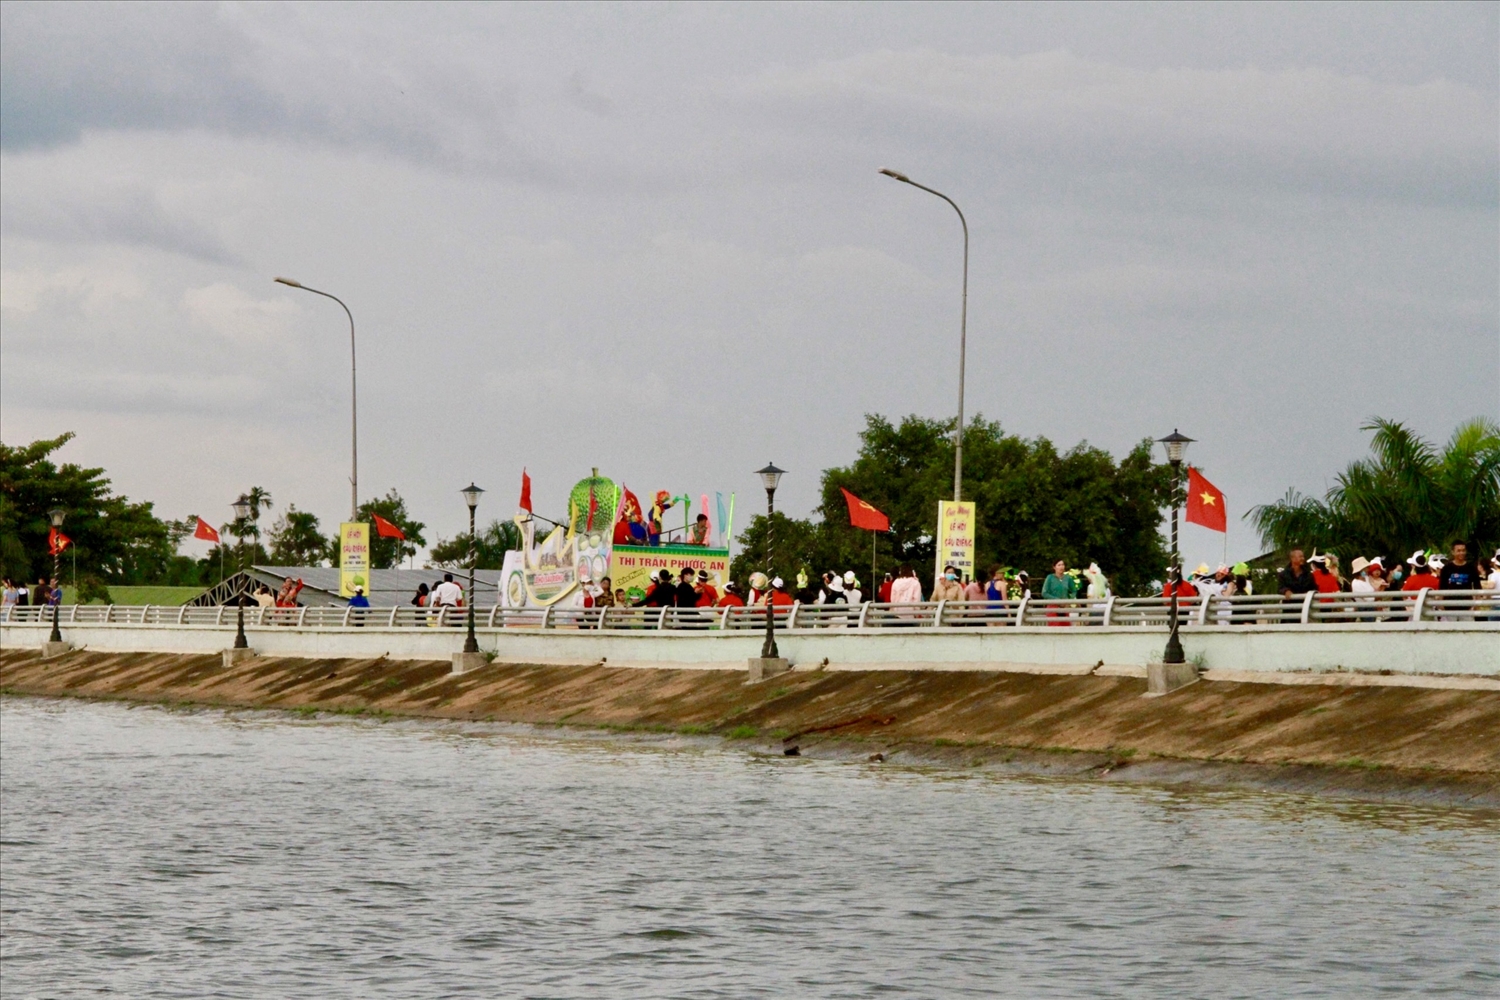 Đoàn biểu diễn sẽ đi vòng quanh hồ Tân An sau đó tập trung tại Quảng trường hồ Tân An để biểu diễn diễu hành tại đây